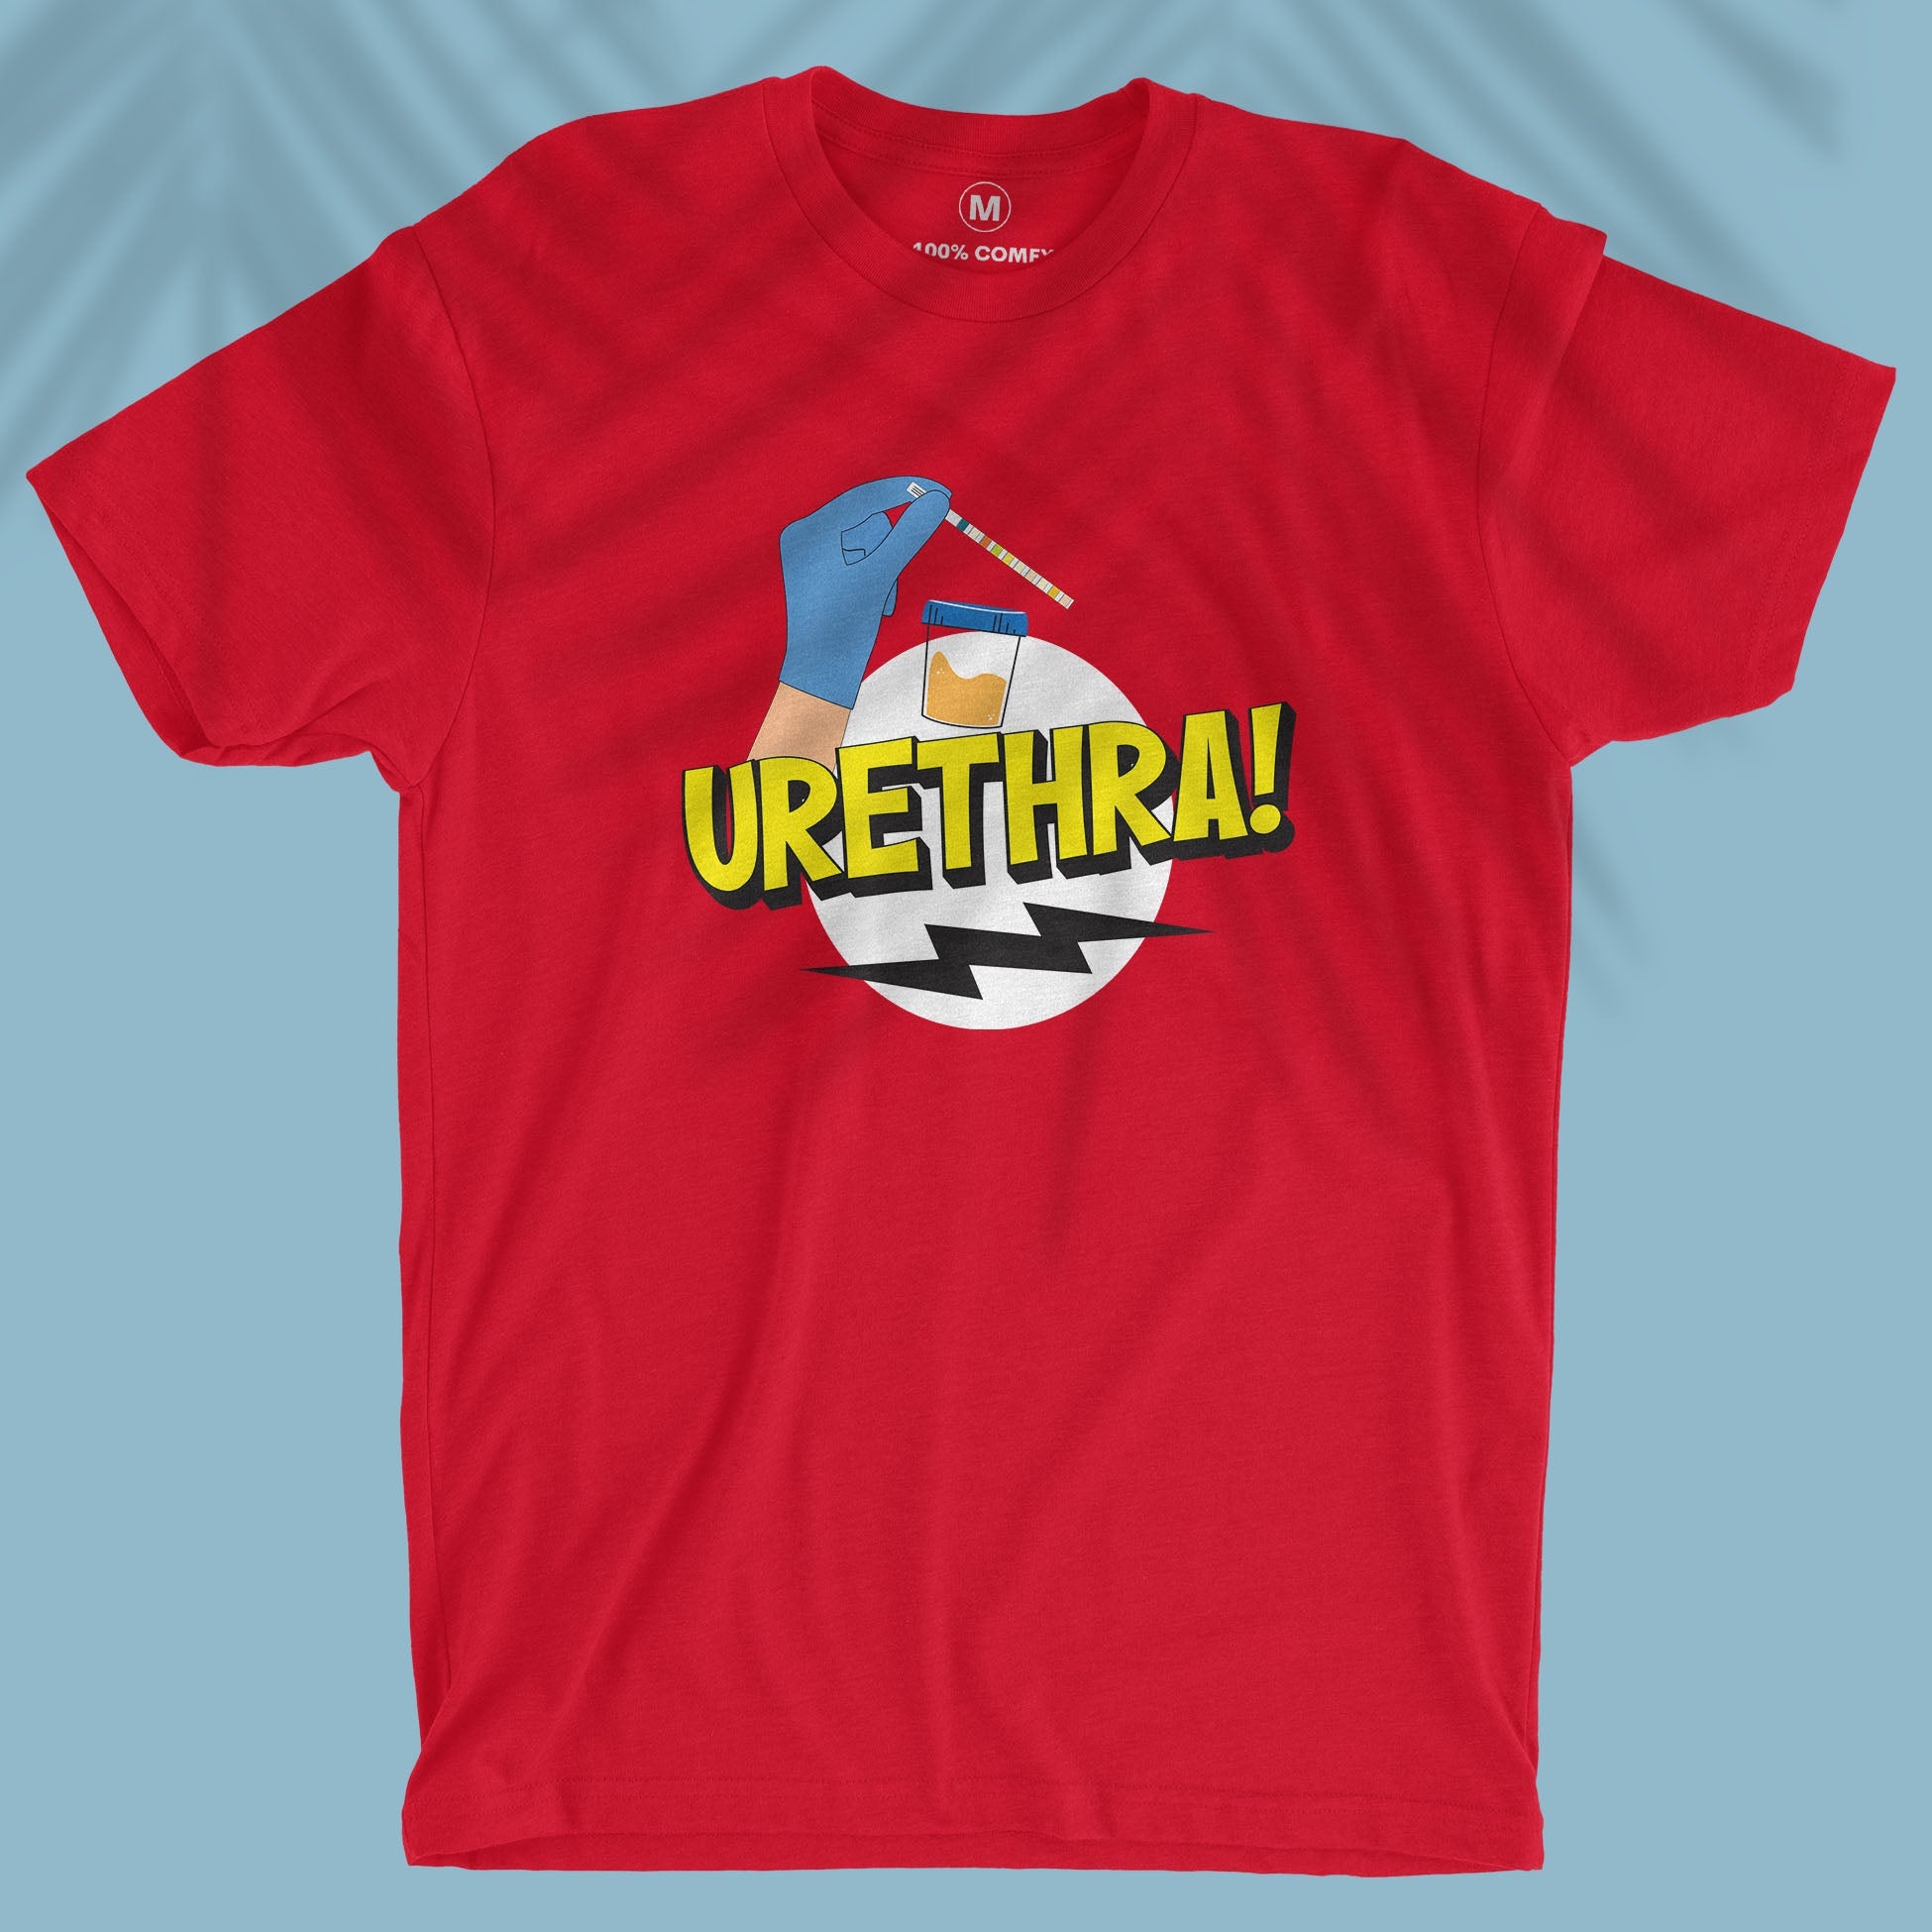 Urethra! - Men T-shirt